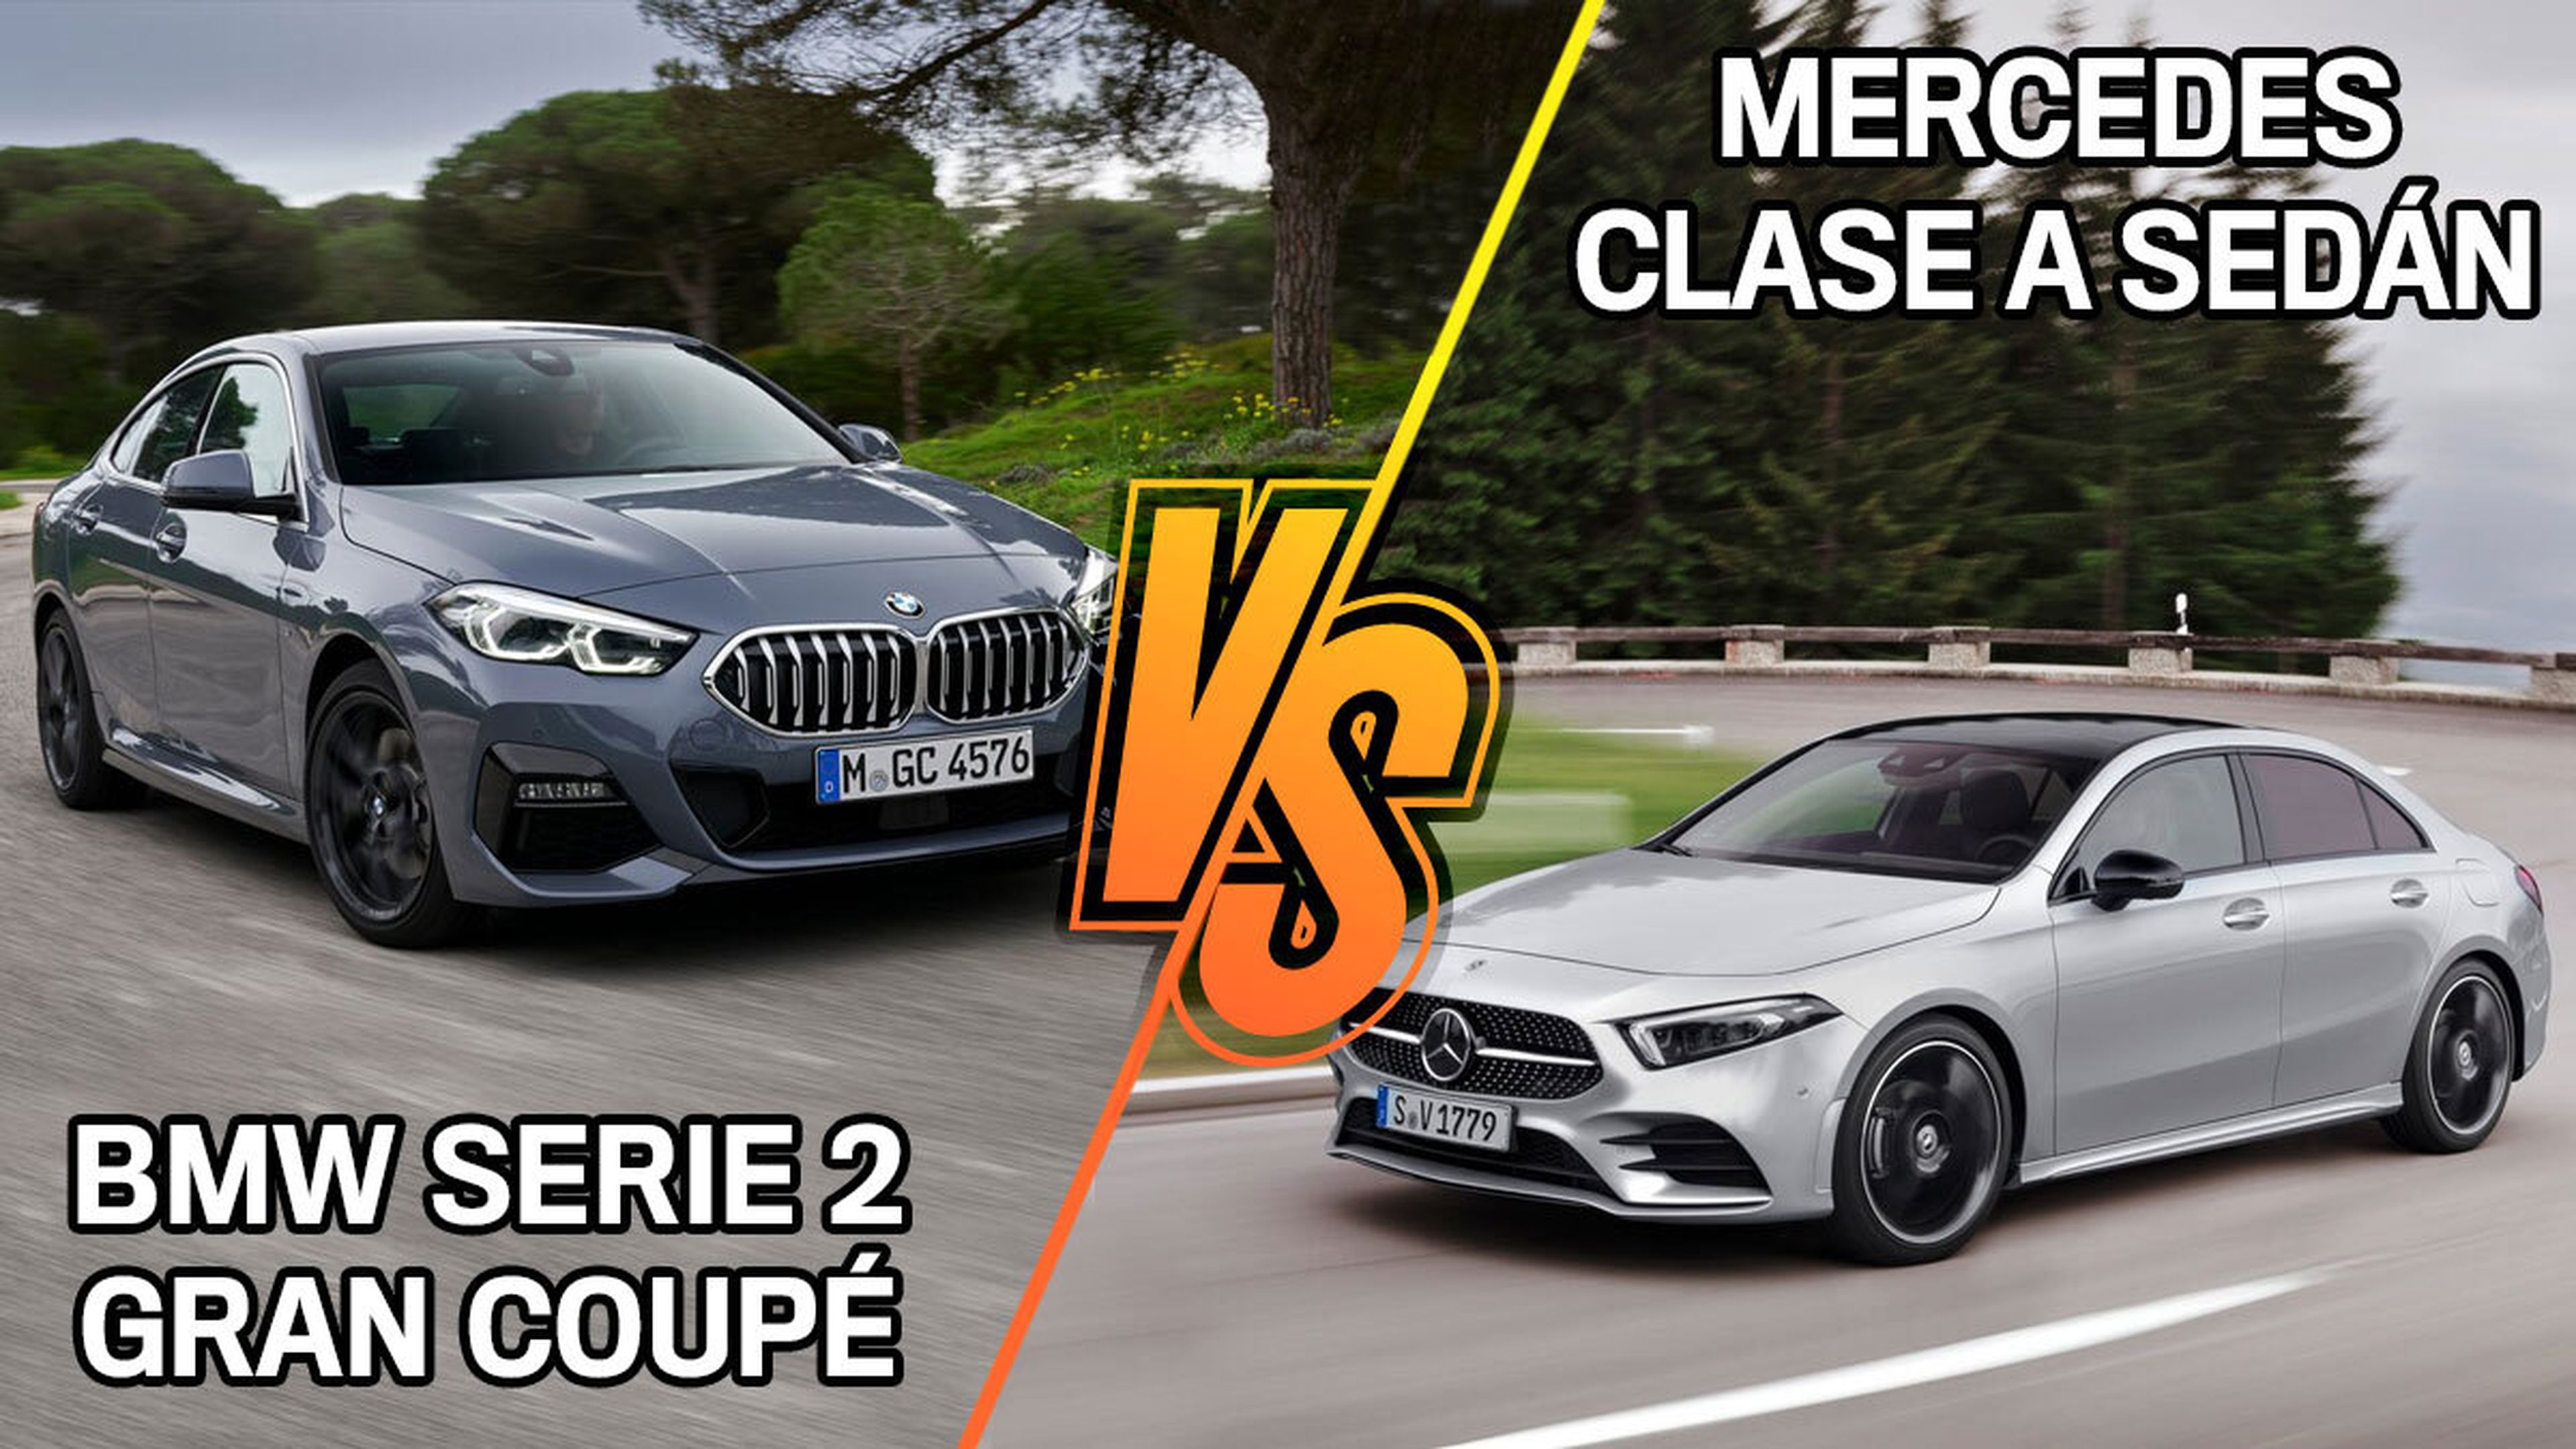 BMW Serie 2 o Mercedes Clase A, ¿cuál es el mejor para comprar?